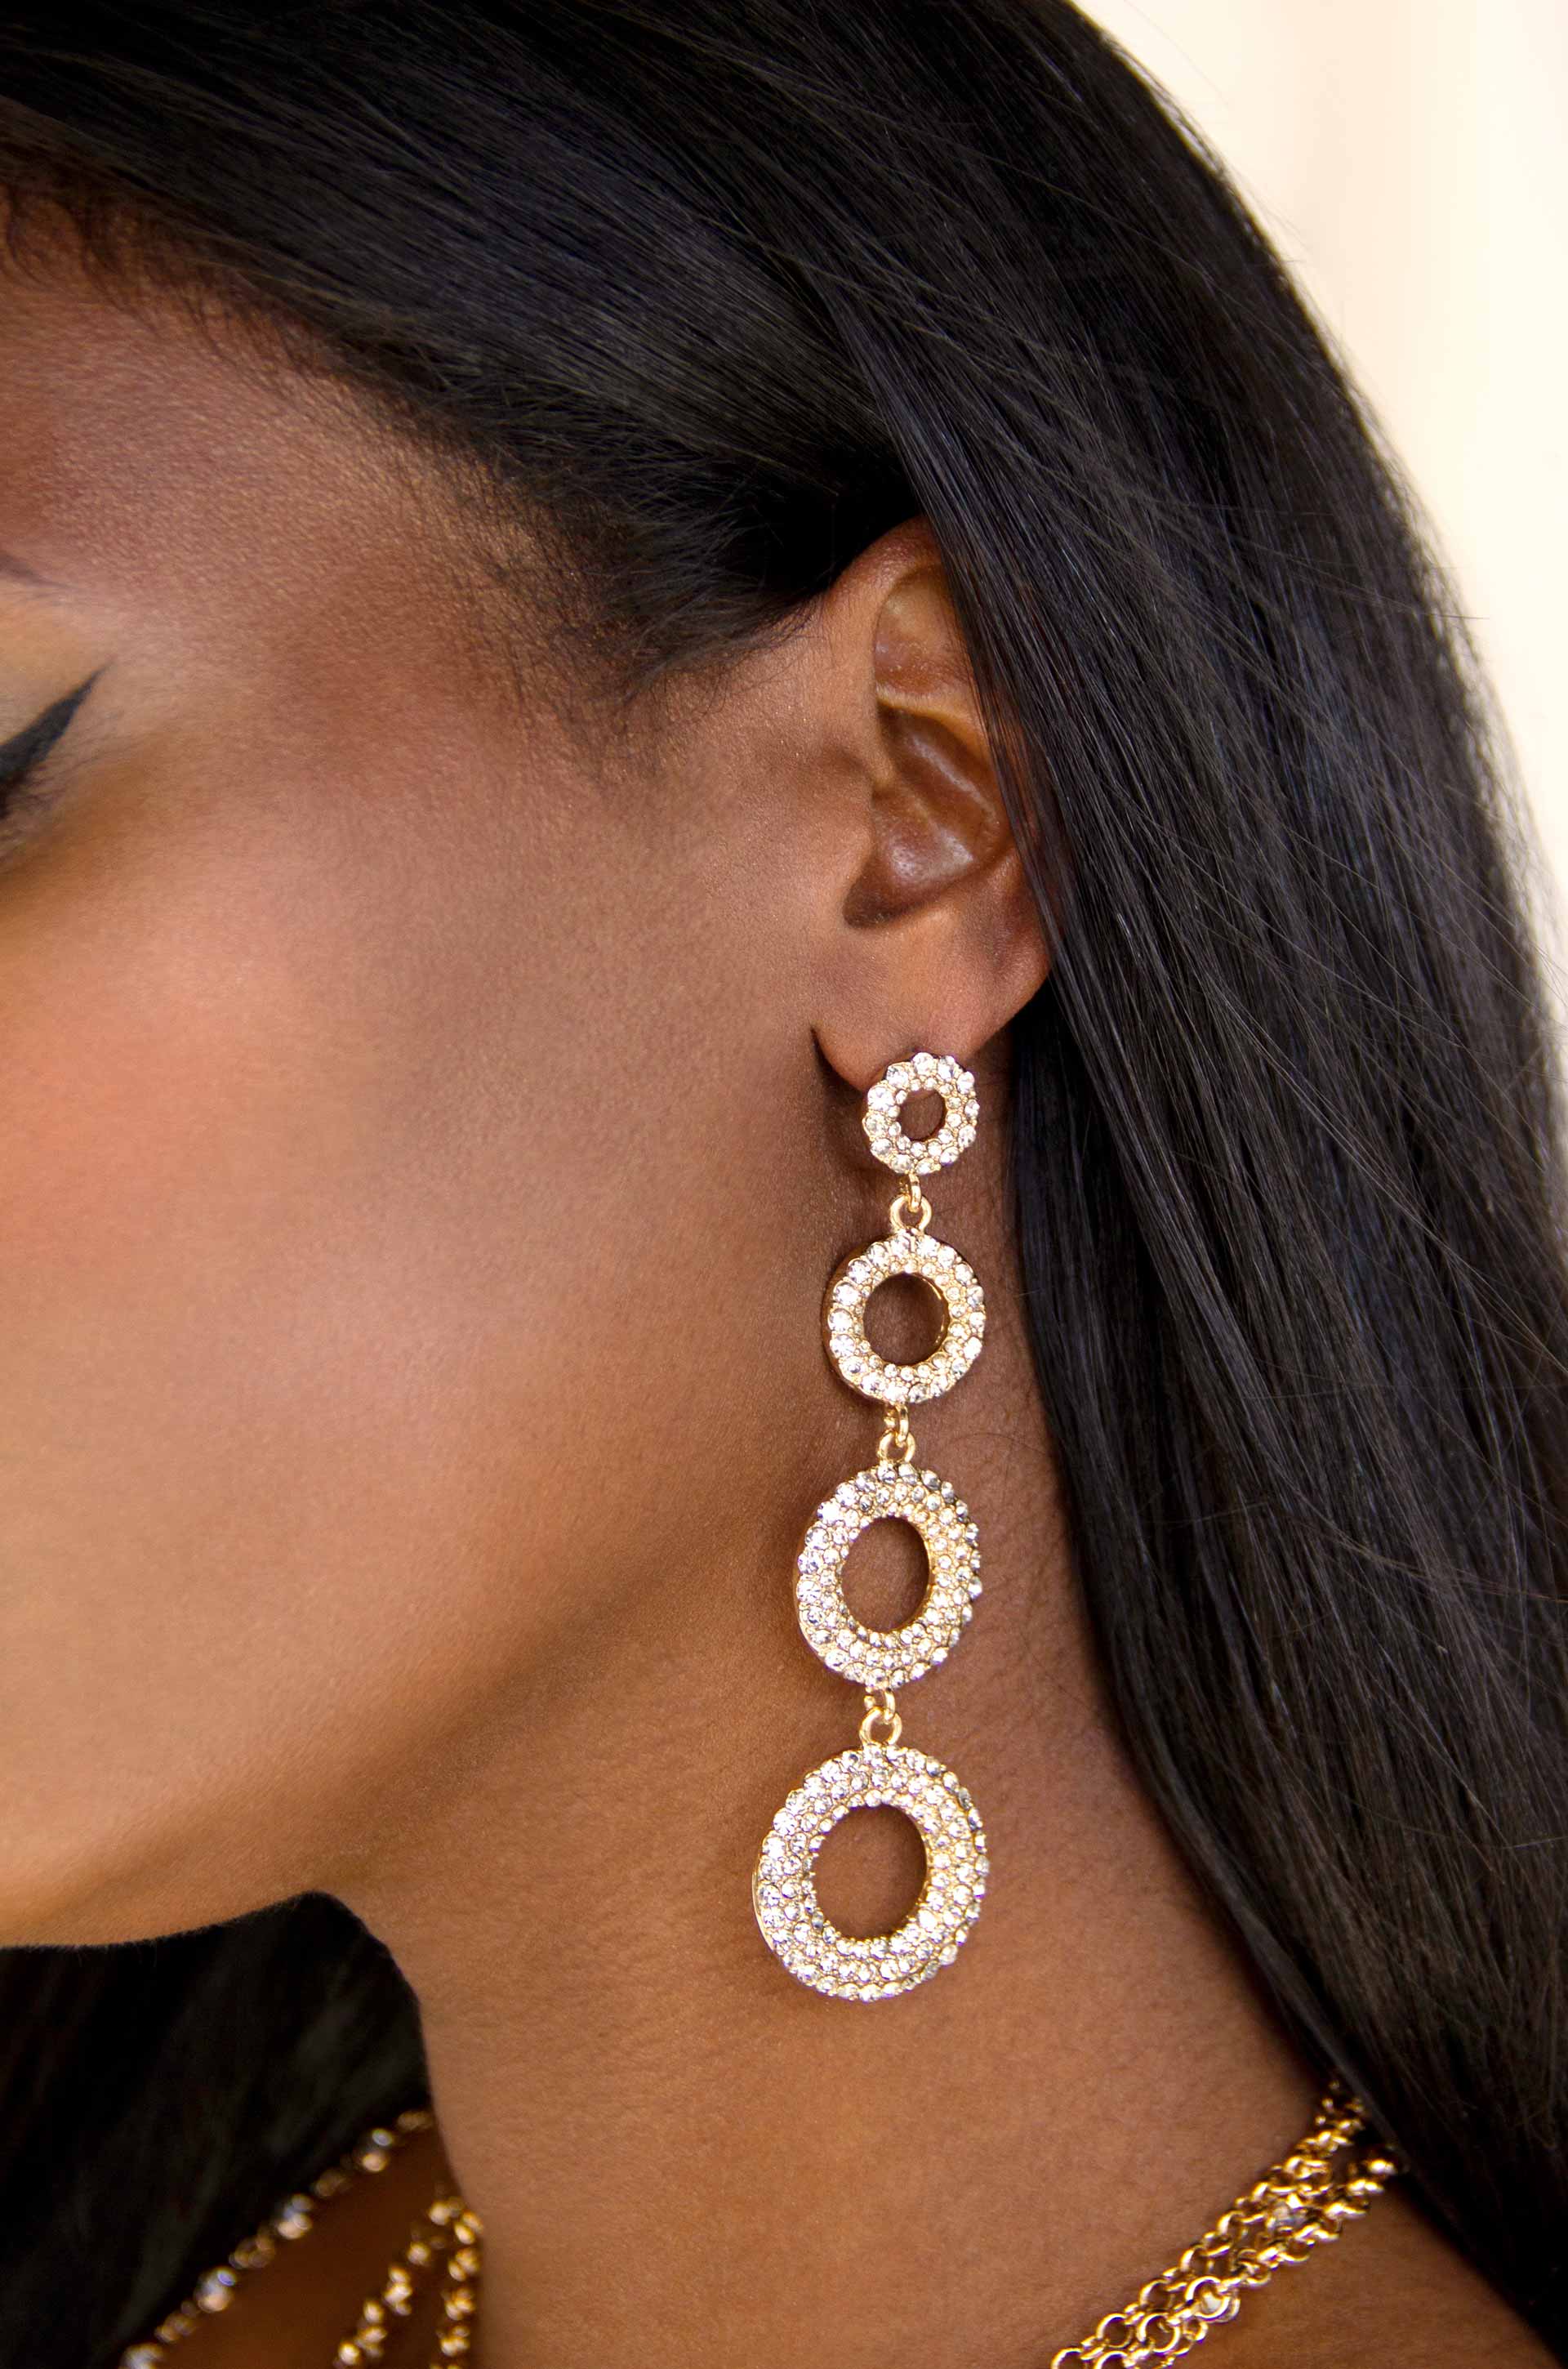 Hetal - Sparkling Crystal & Black Clover Earrings - 18k Gold